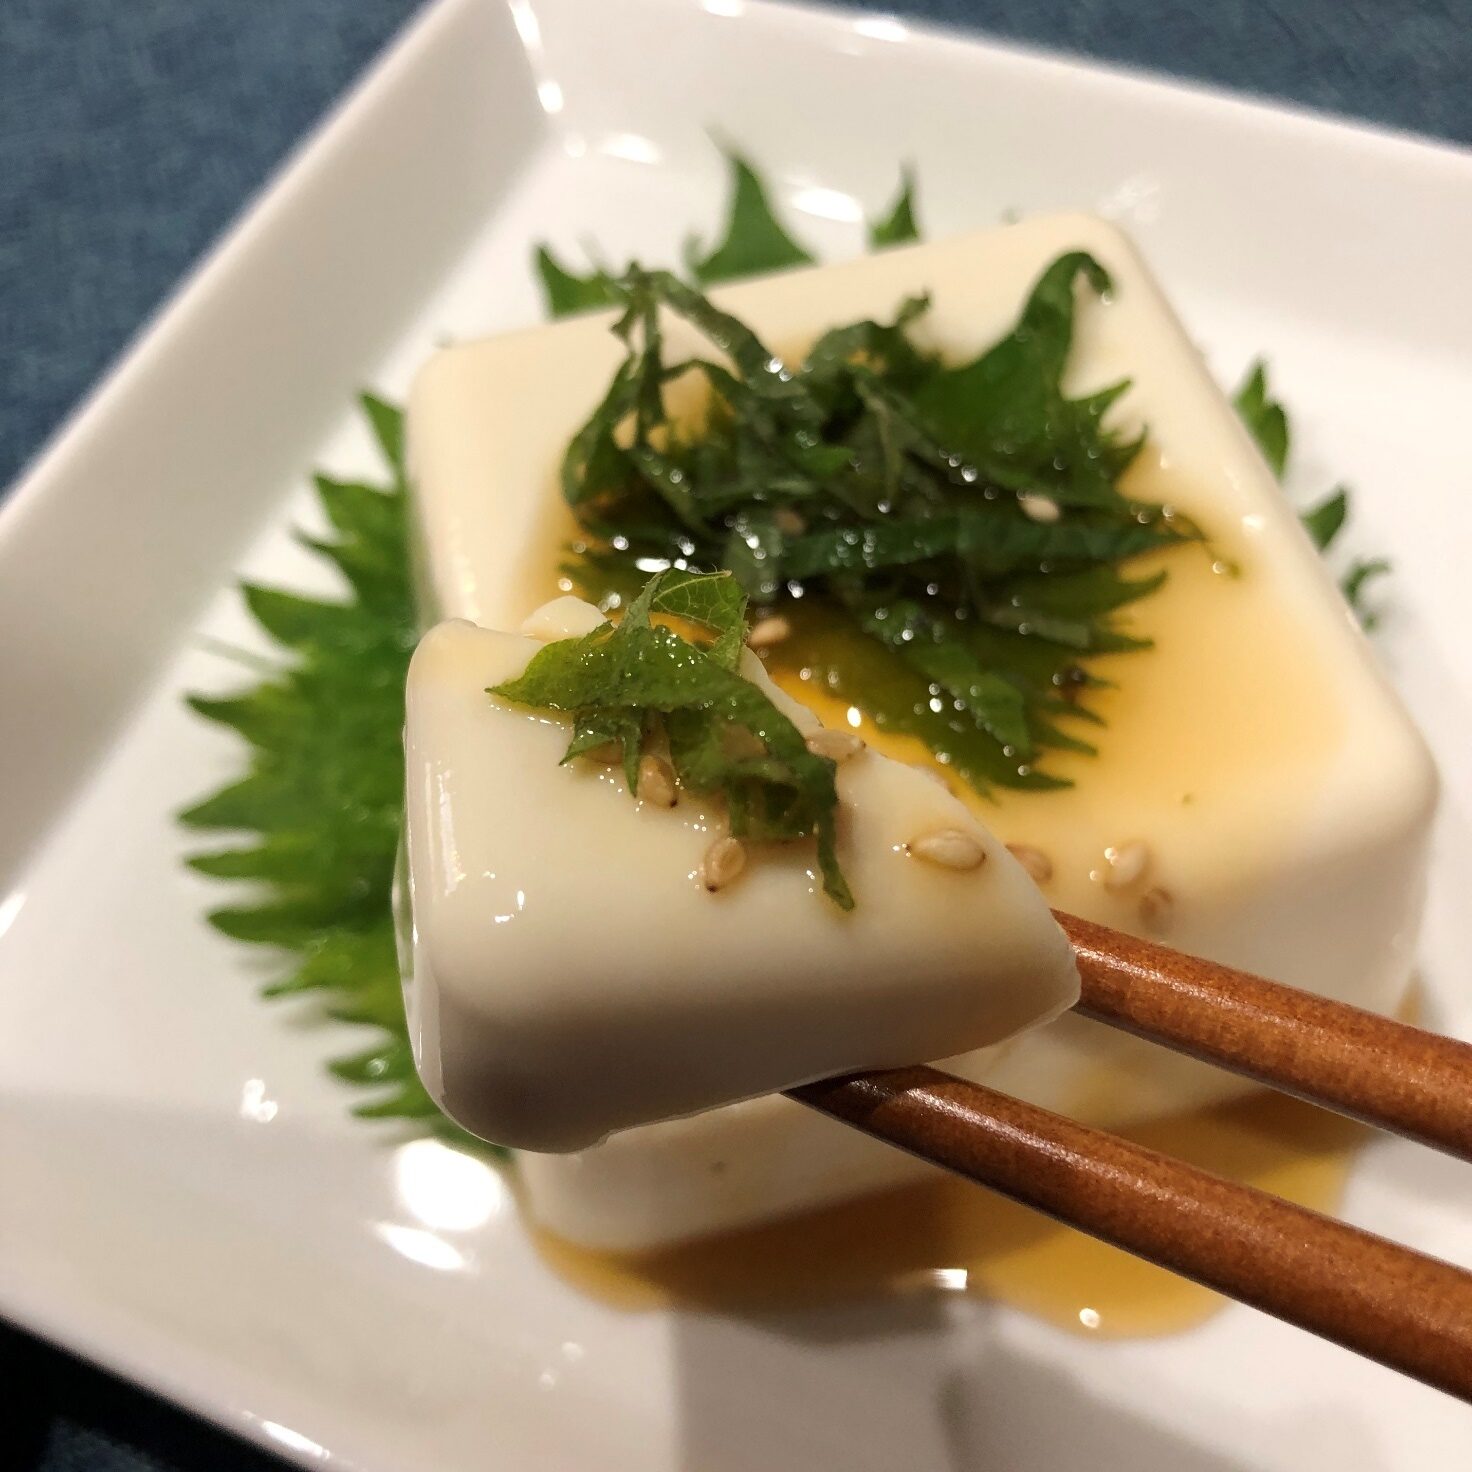 箸で持ち上げた業務スーパーのノンオイルドレッシング青じそをかけた豆腐のアップ